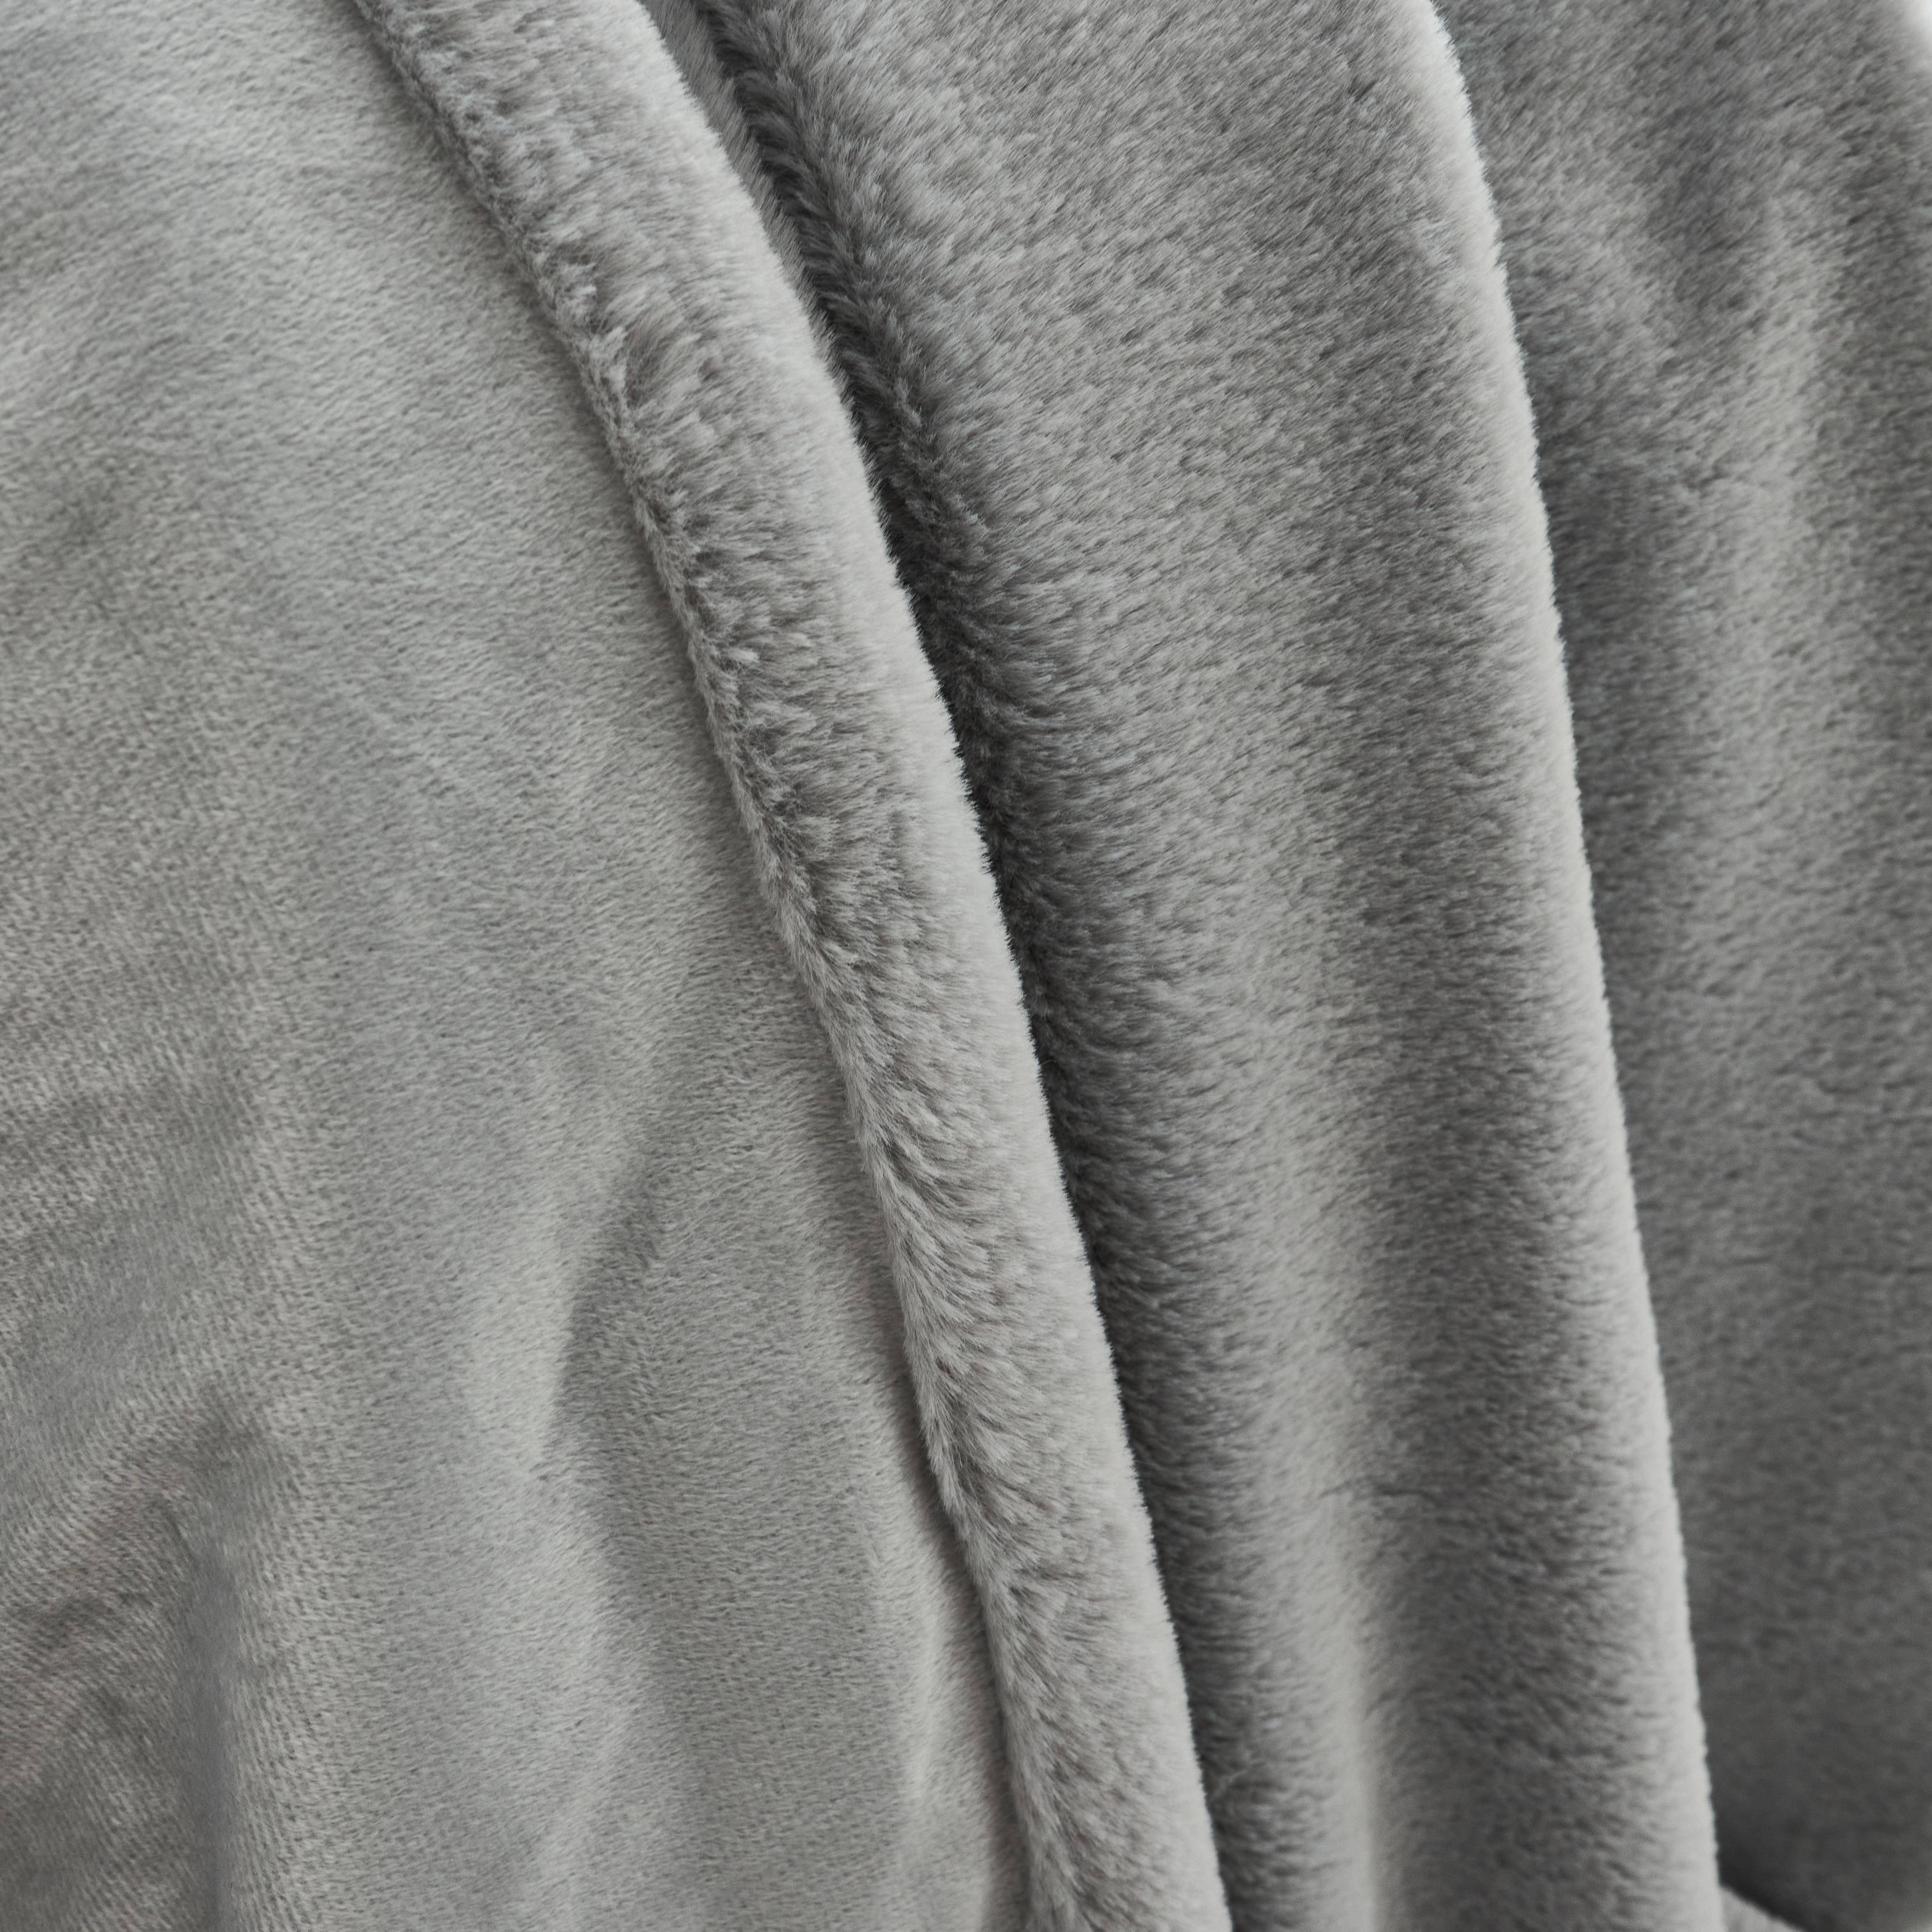 Plaid fausse fourrure gris clair poil long doublure polaire 130 x 160cm - LAPONIE,sweeek,Photo2